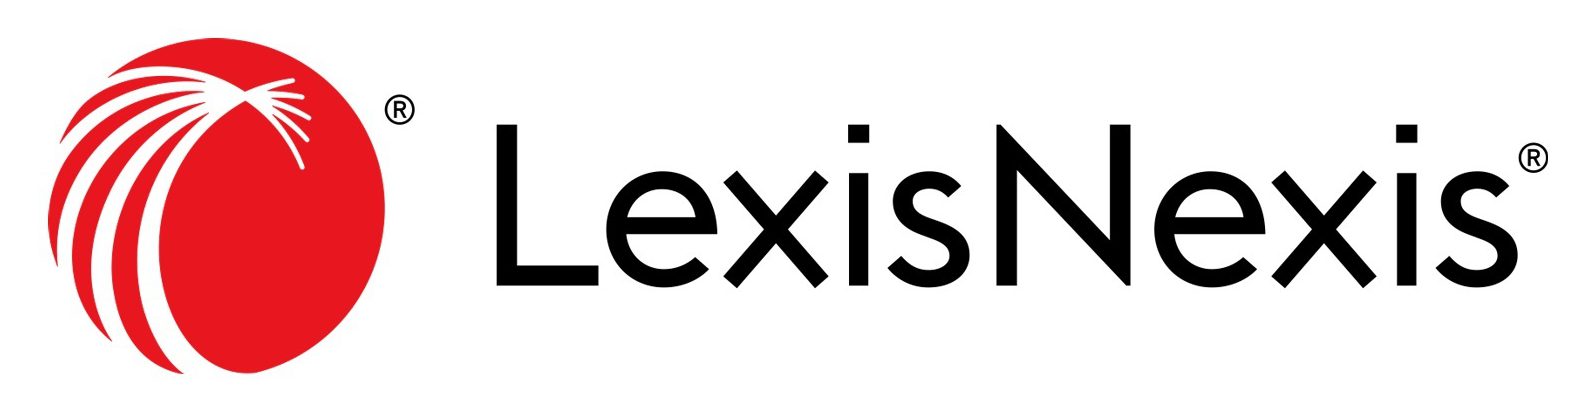 Lexis Nexis logo - Portal Integration